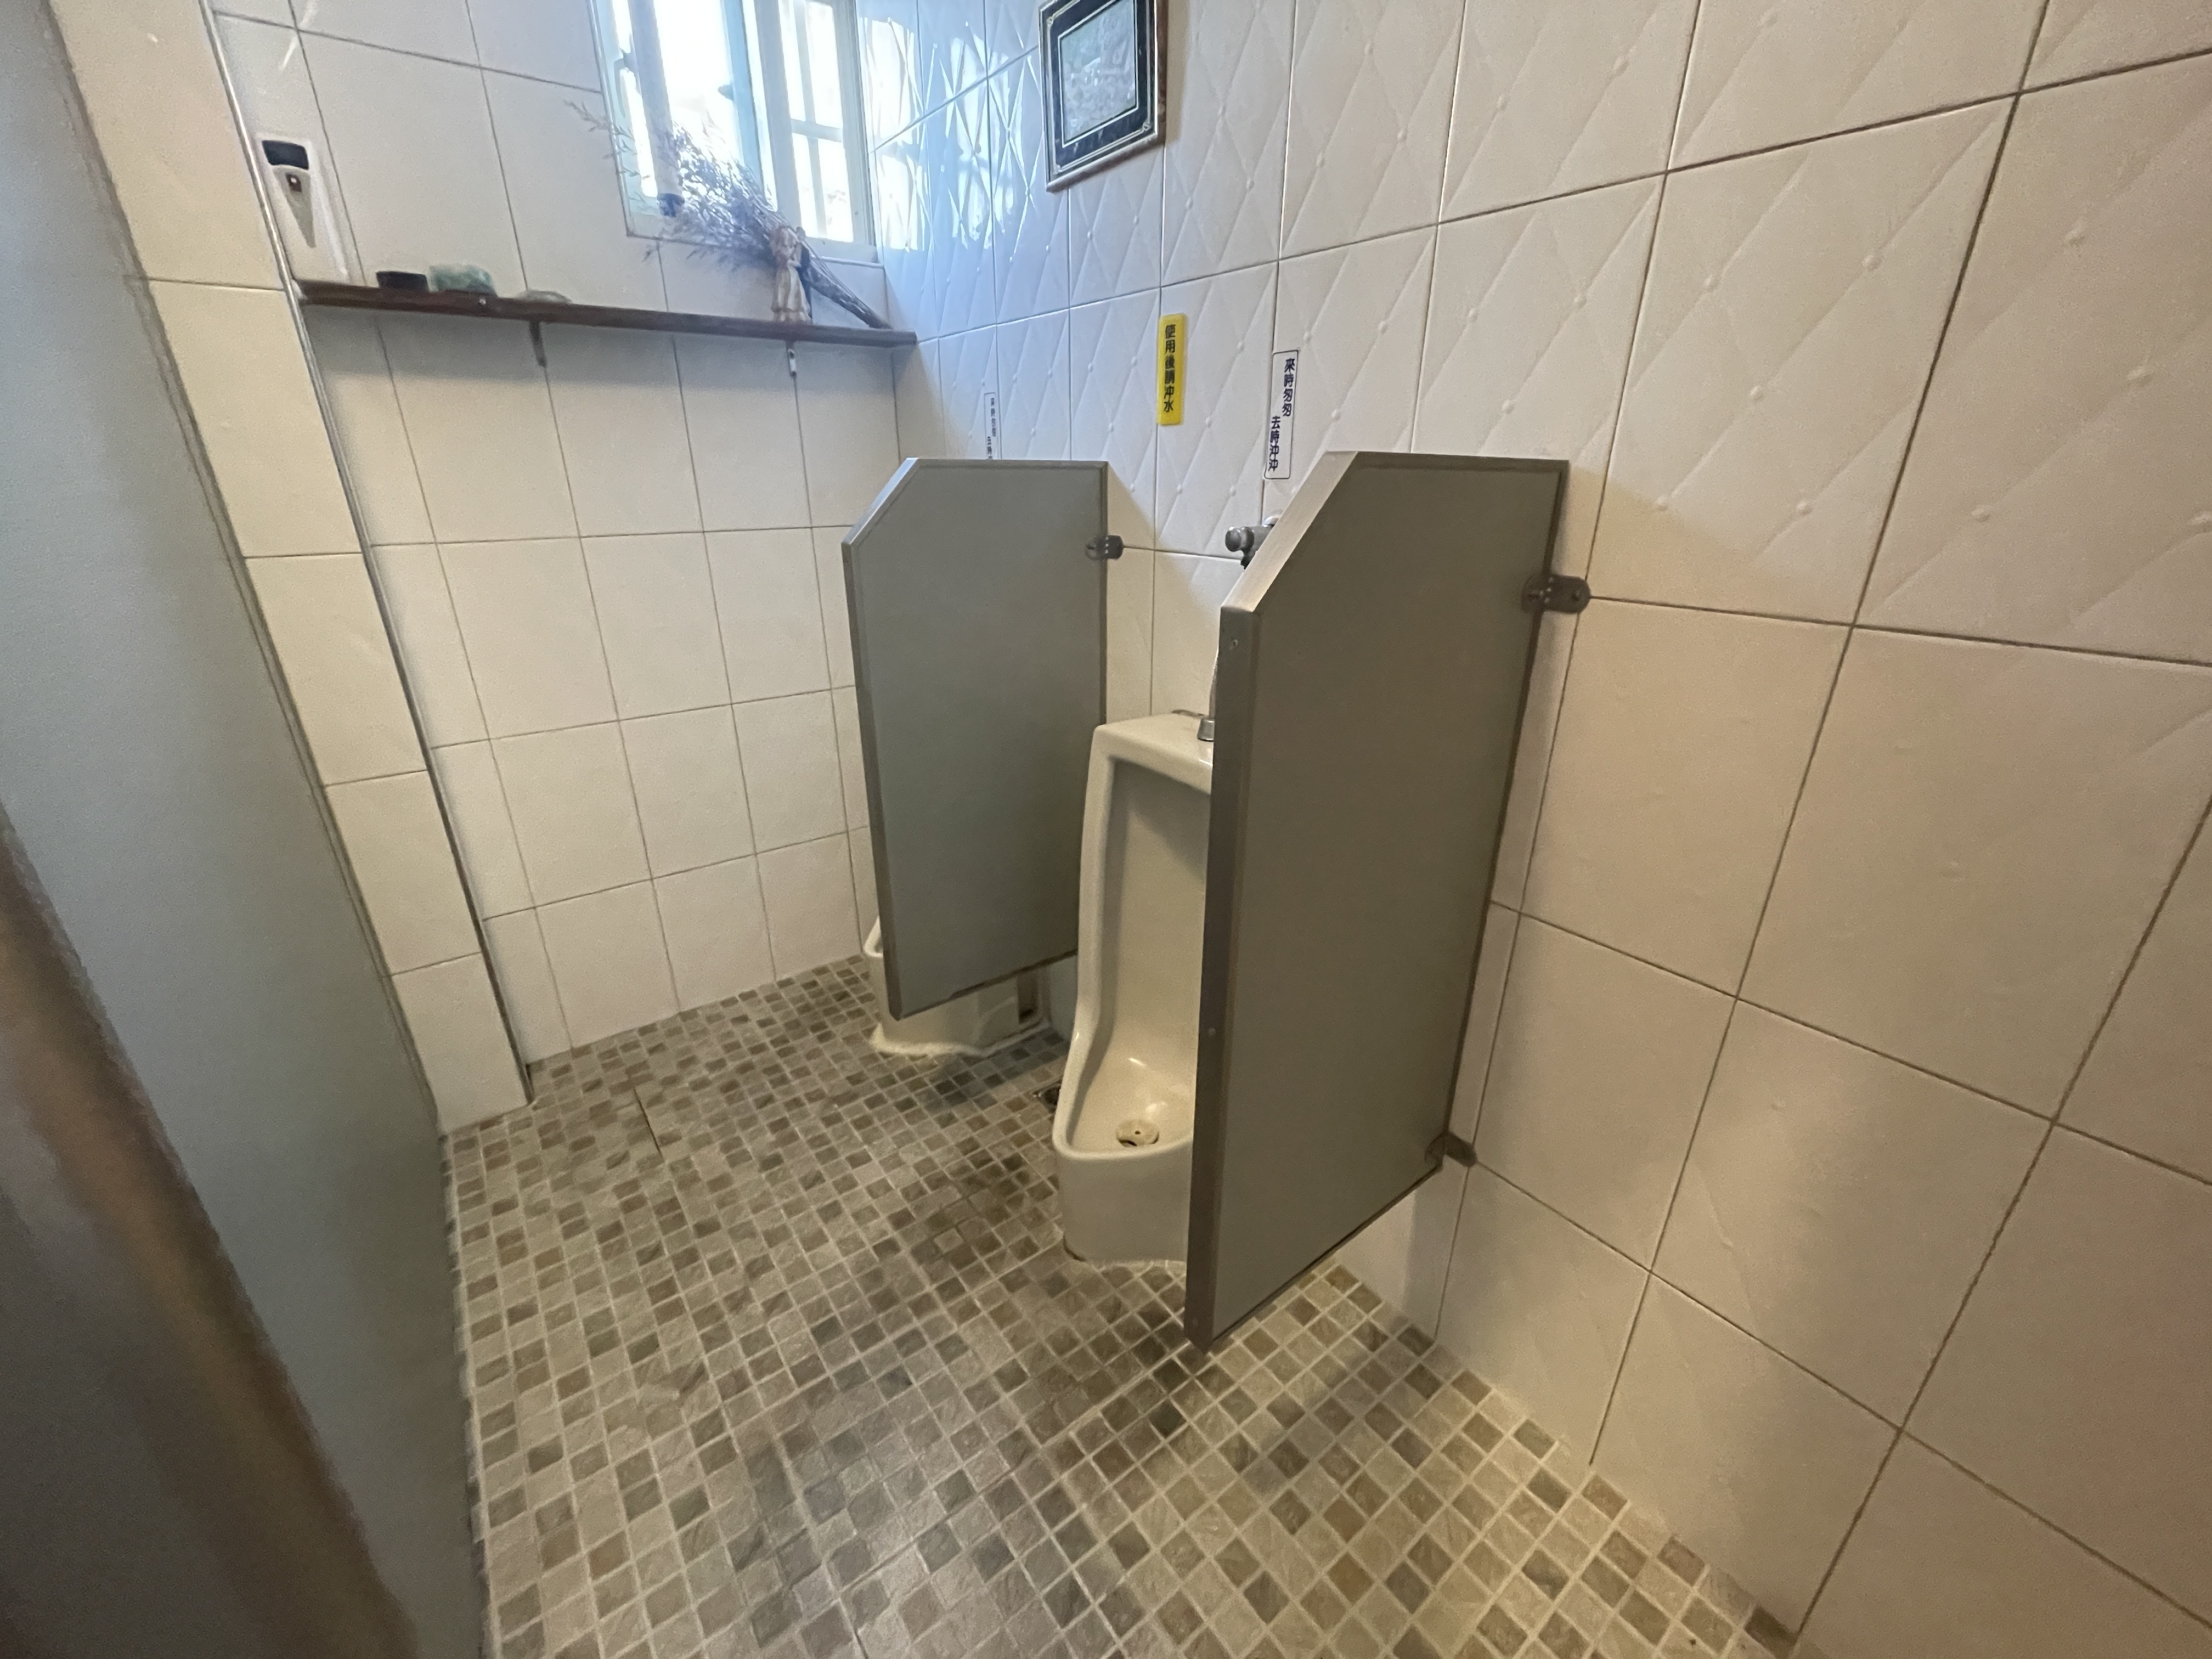 廁所內部空間3